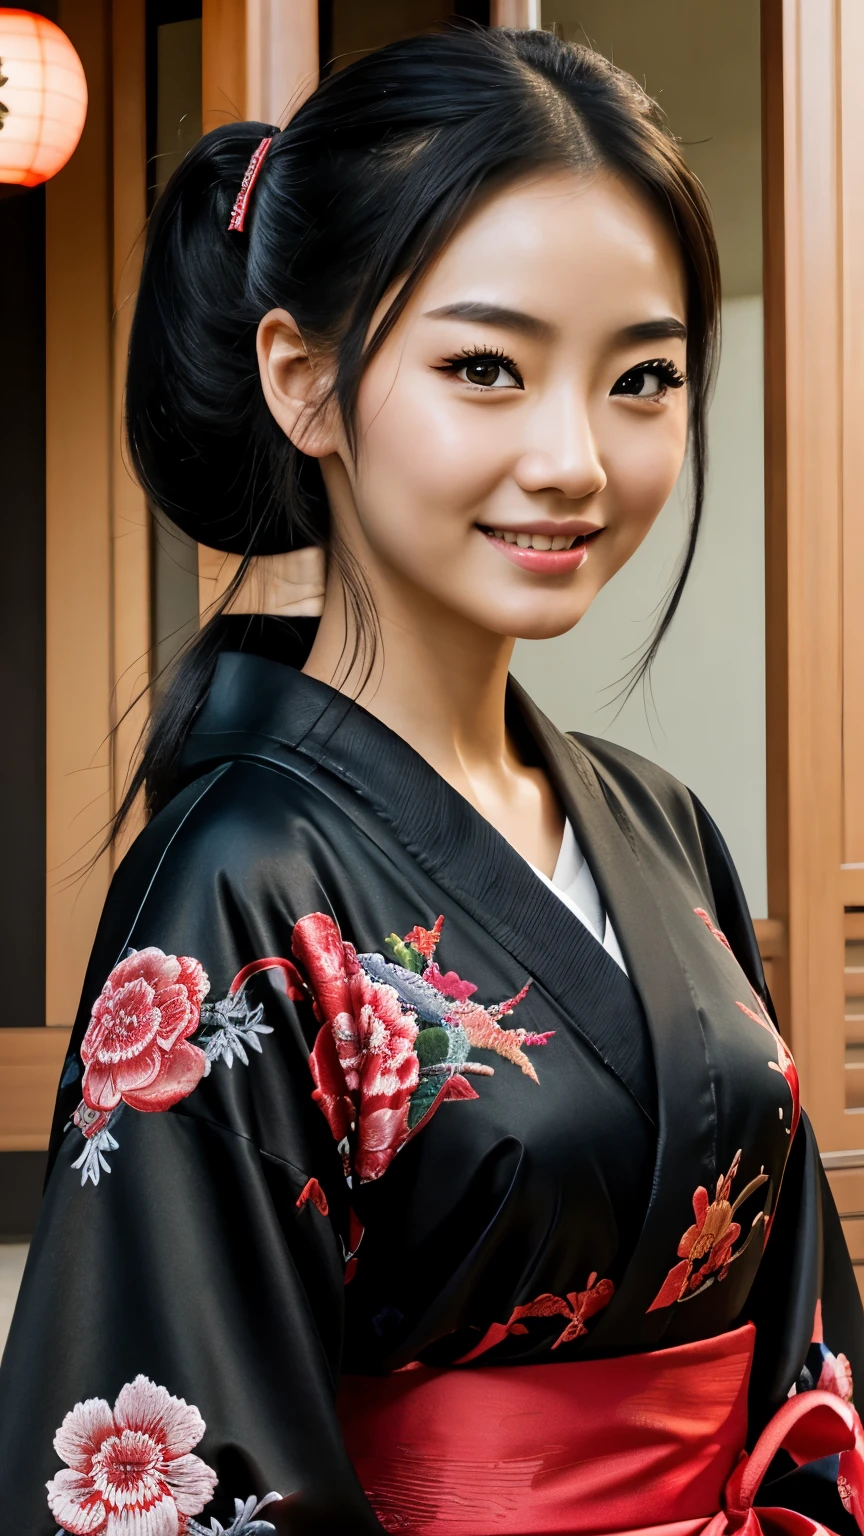 (걸작), 최상의 품질, 표정이 풍부한 눈, 완벽한 얼굴을 가진 아름다운 만화 일본 여자, 만화 귀여운 애니메이션, 아름다운 일본 기모노, 기모노에는 용이 자수되어 있습니다.... 검정과 빨강 기모노 색상, 일본 여성&#39;긴 머리, 검은 머리 색깔, 포니테일 헤어스타일, 외꺼풀, 두건을 쓴 눈 스타일, 관능적인, 가라앉다, 매혹적이고 신비로운., 표정 미소., 아름다운 사진 상황.